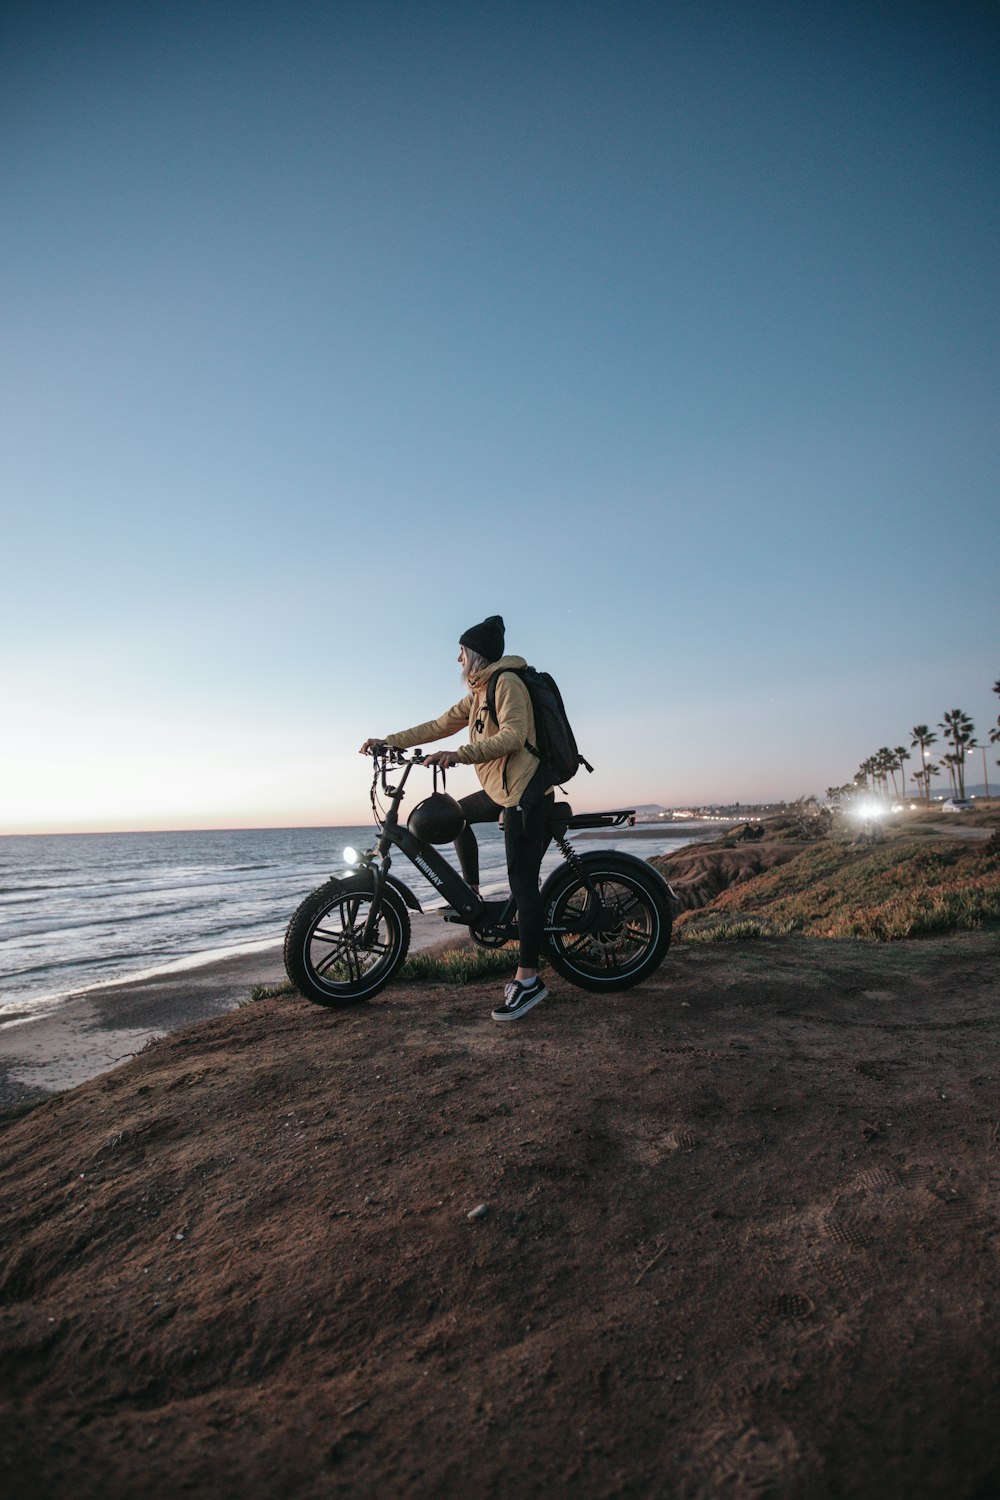 갈색 재킷을 입은 남자가 검은 오토바이를 타고 수역 근처의 갈색 모래 위에